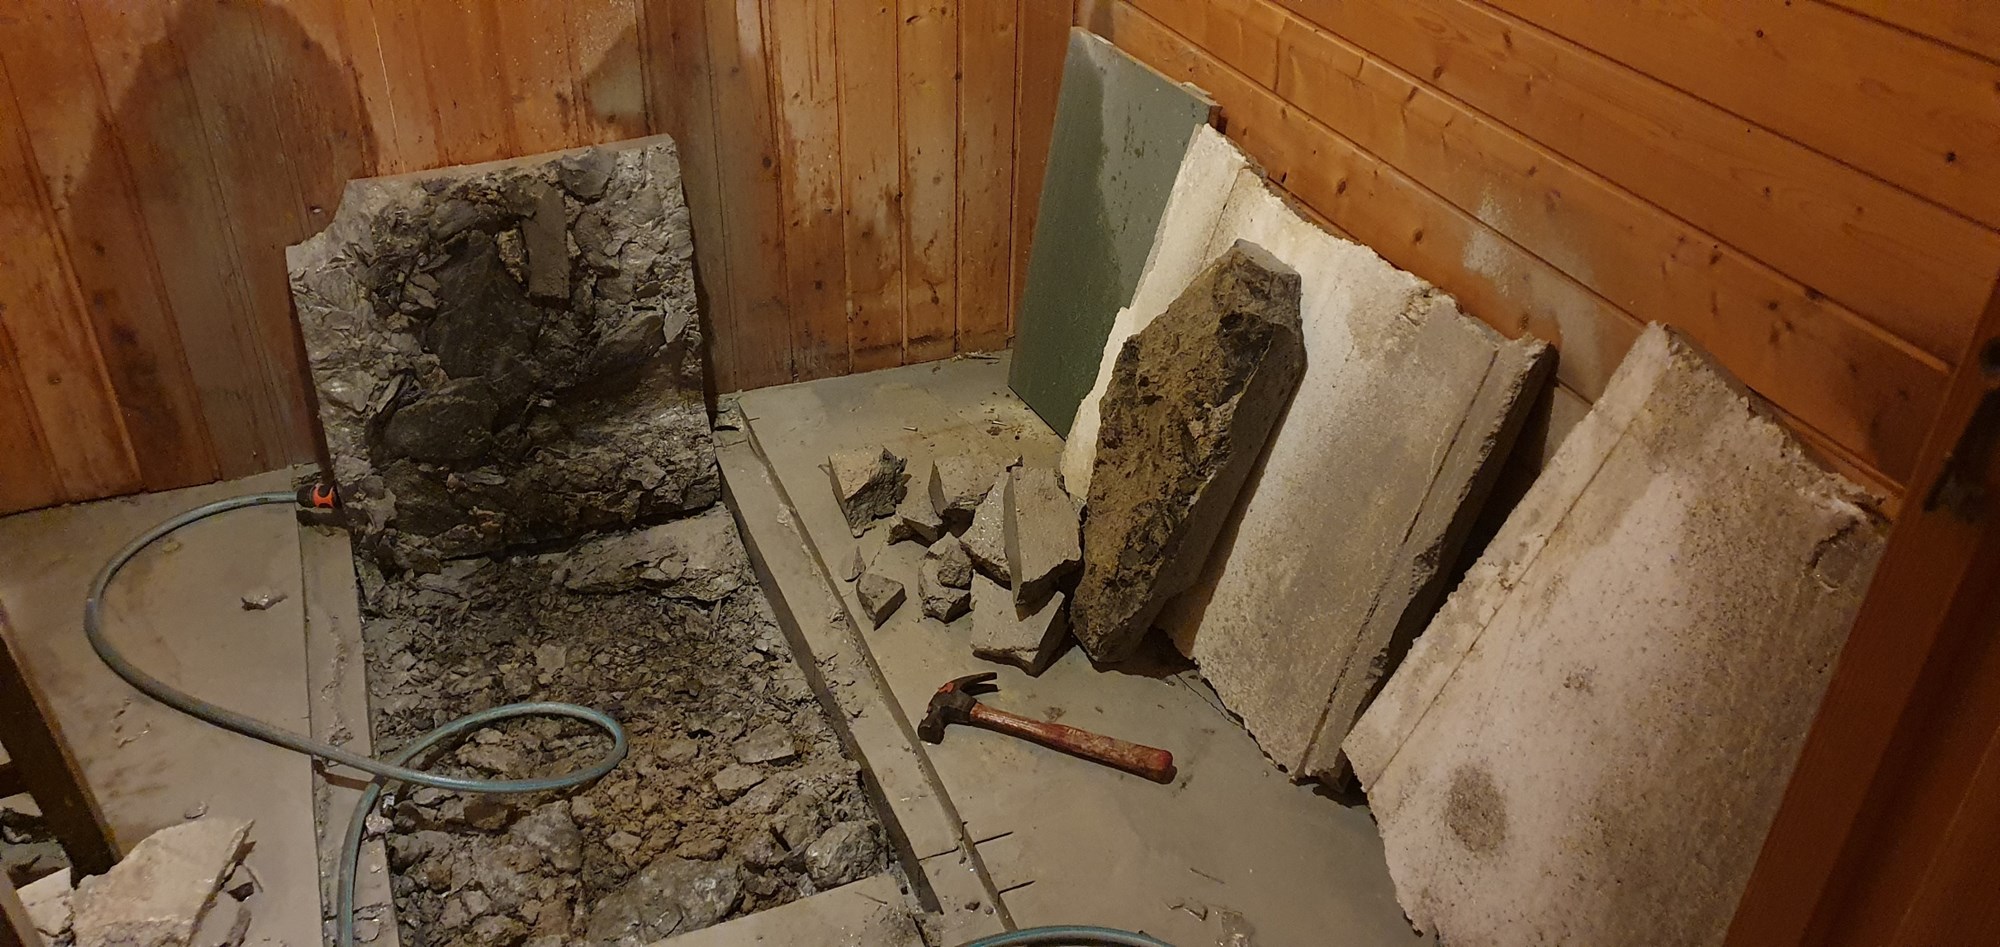 Må hugge opp kjellergulv for å legge nytt avløp, kan jeg bruke betongen på nytt? - kjellergulv.jpg - HelgeO